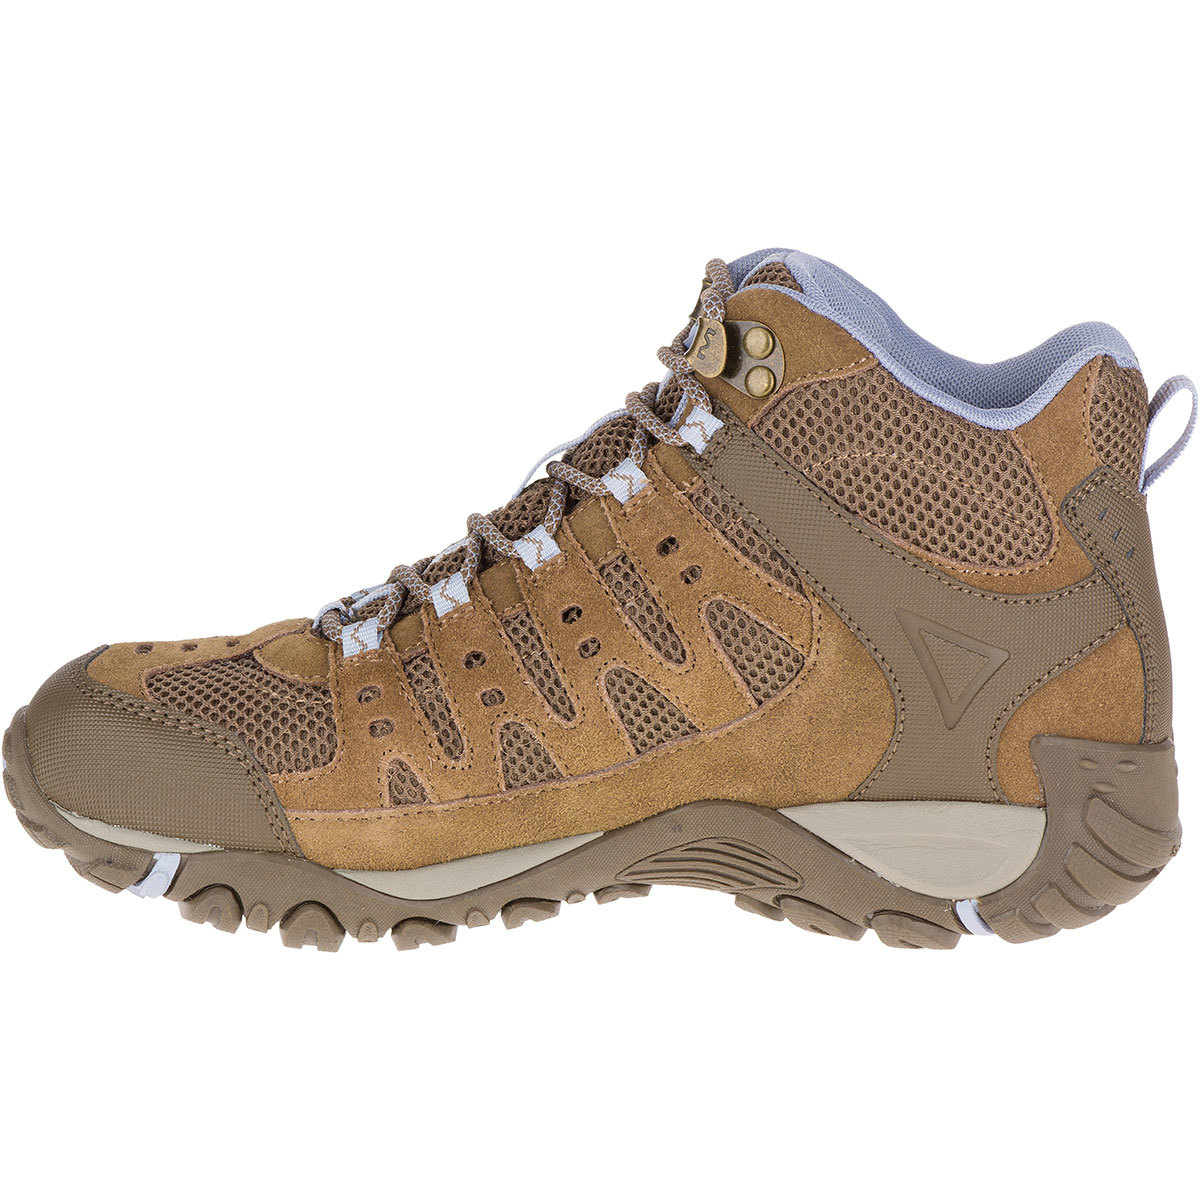 merrell women's accentor mid ventilator waterproof hiking boots